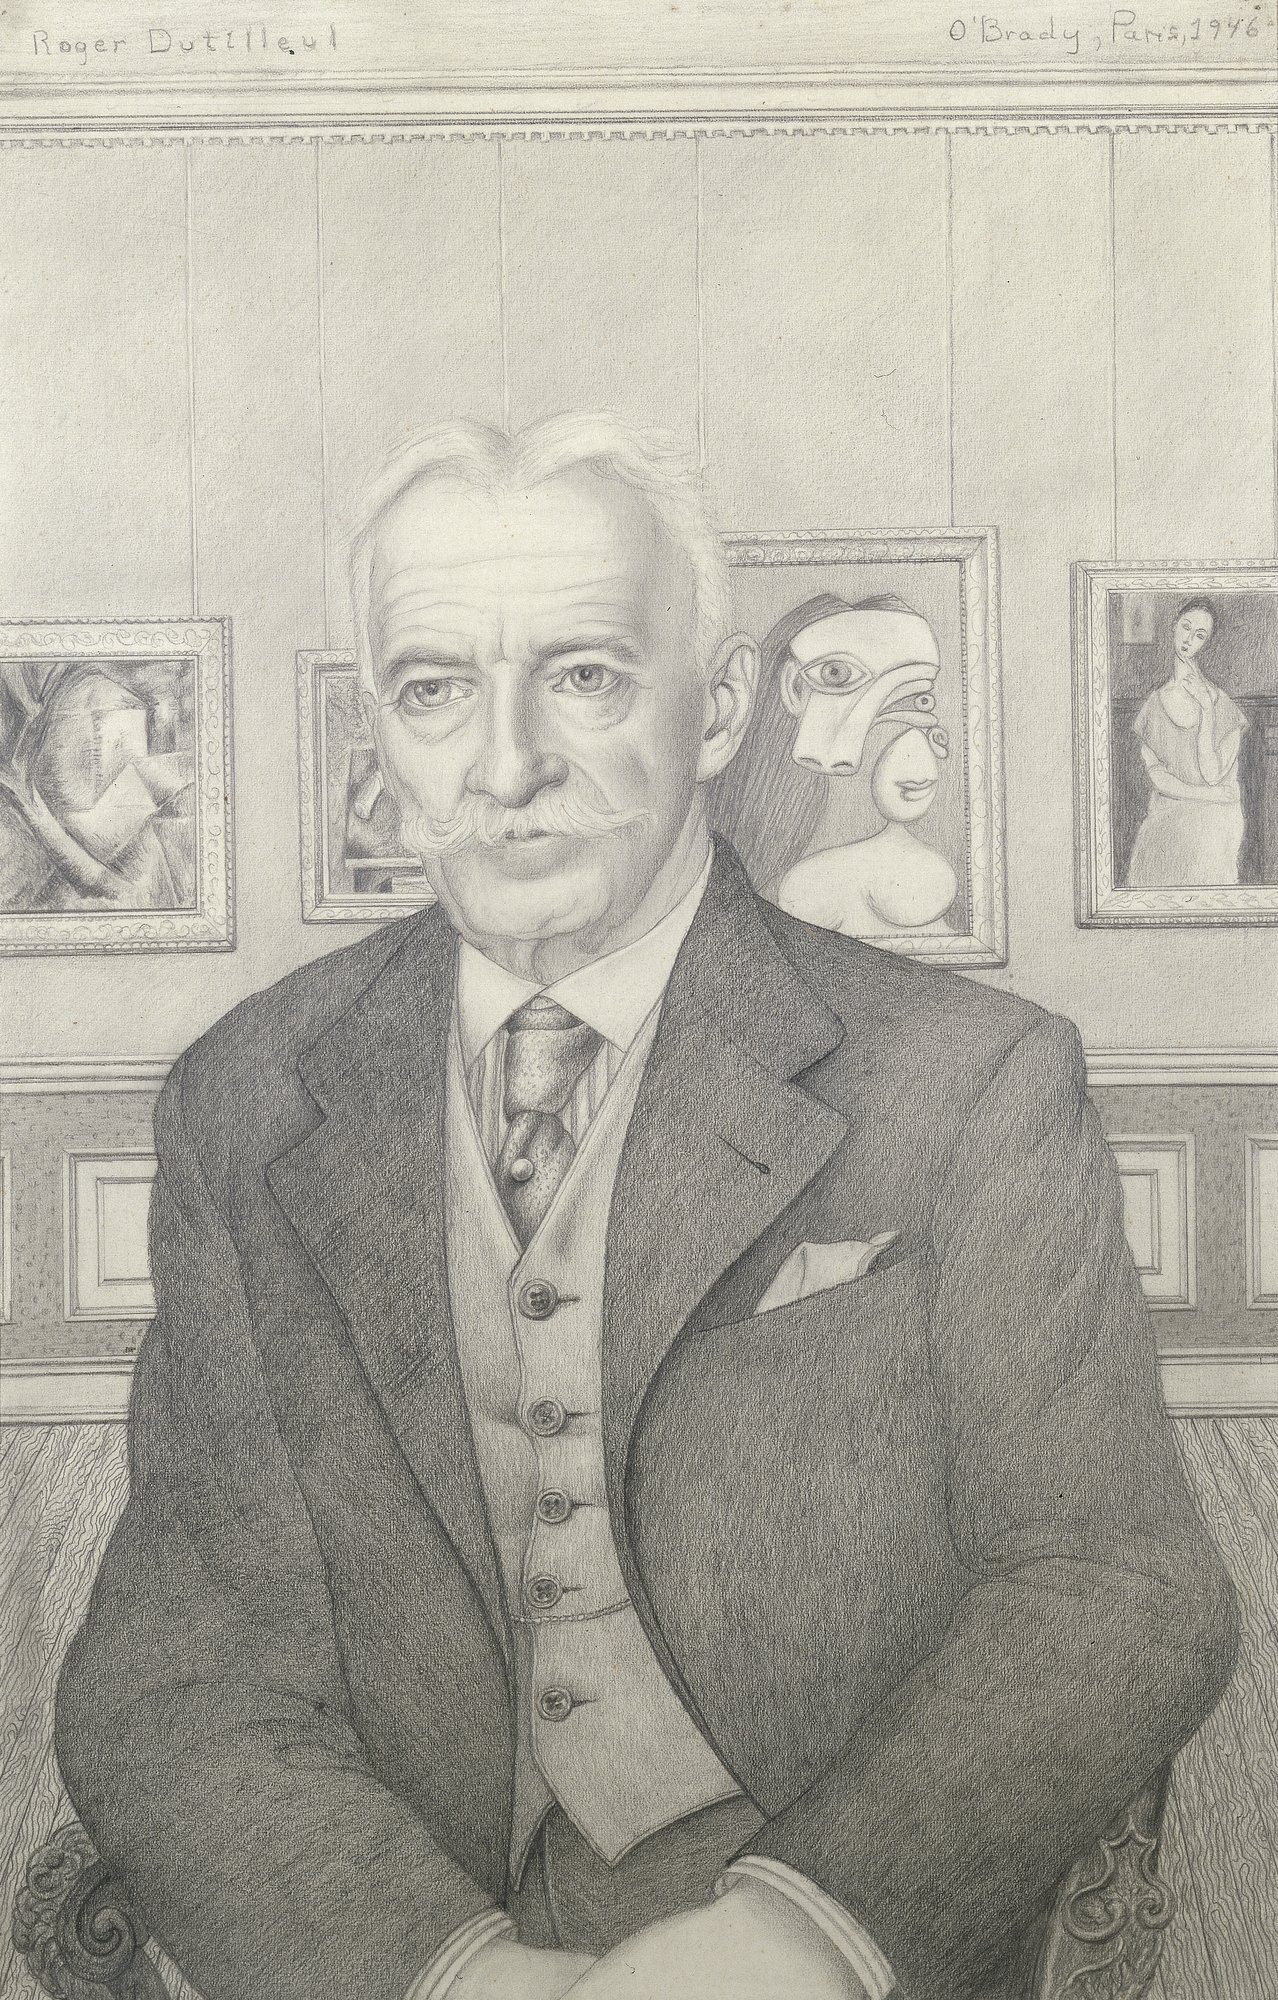 Gertrude O'Brady, Portrait de Roger Dutilleul, 1946